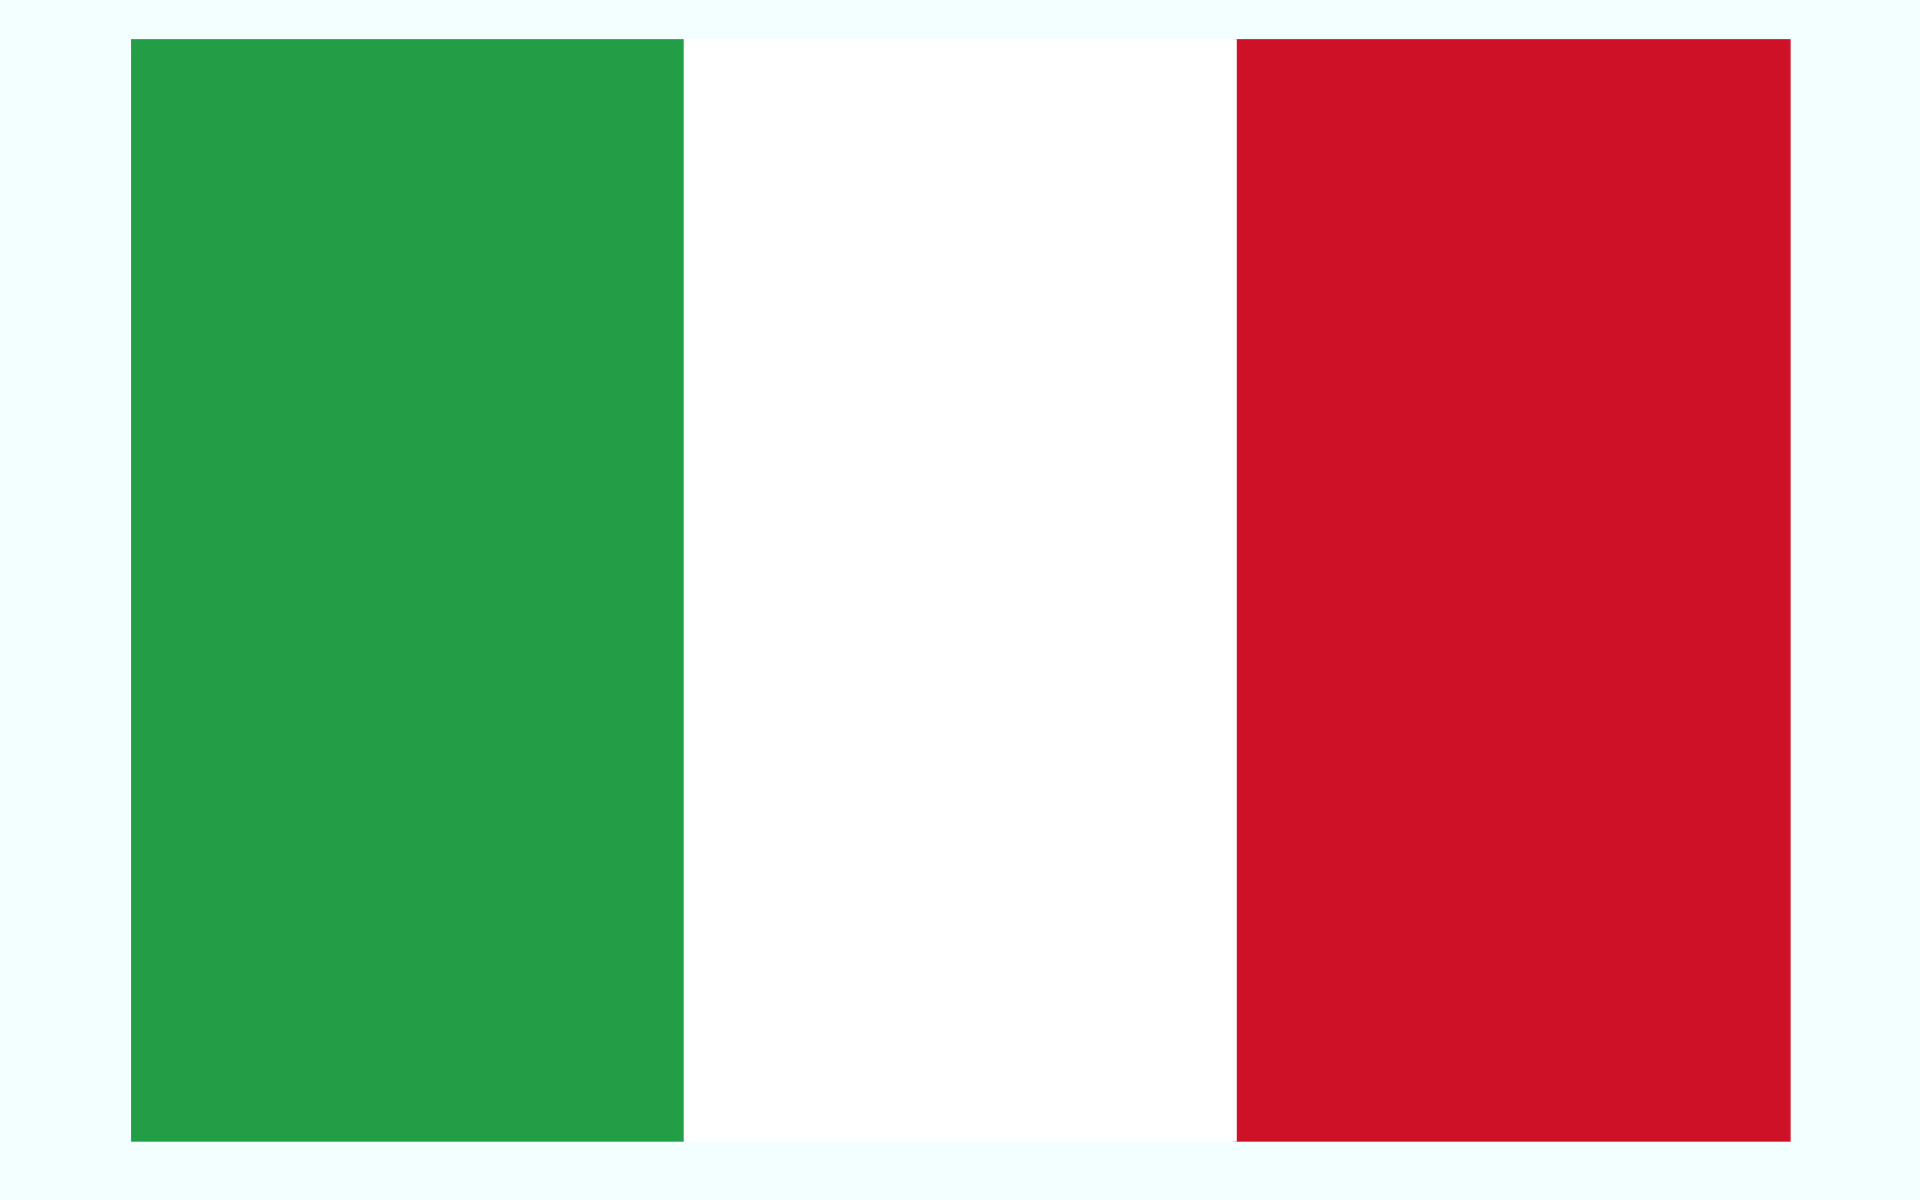 عکس از پرچم کشور ایتالیا
